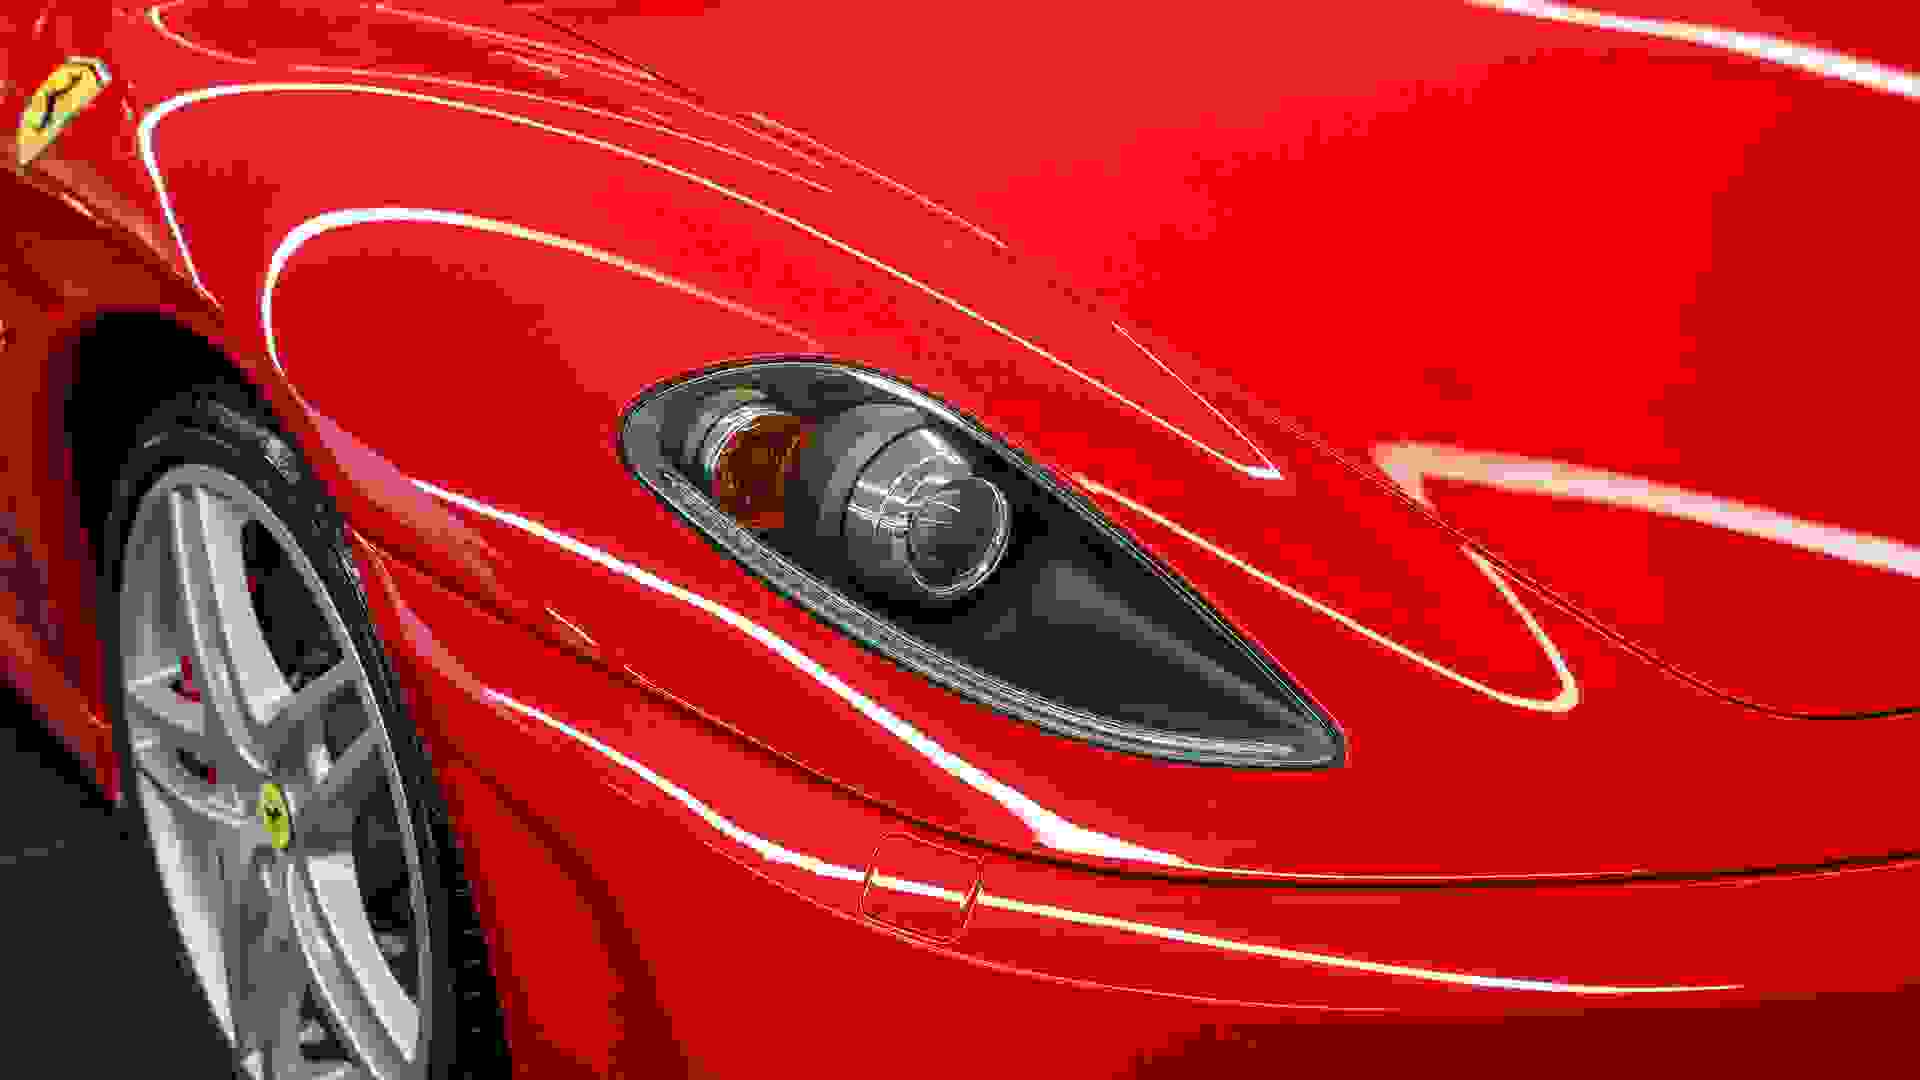 Ferrari F430 Photo d4c031a6-8931-4056-bb1d-916b63305dfe.jpg